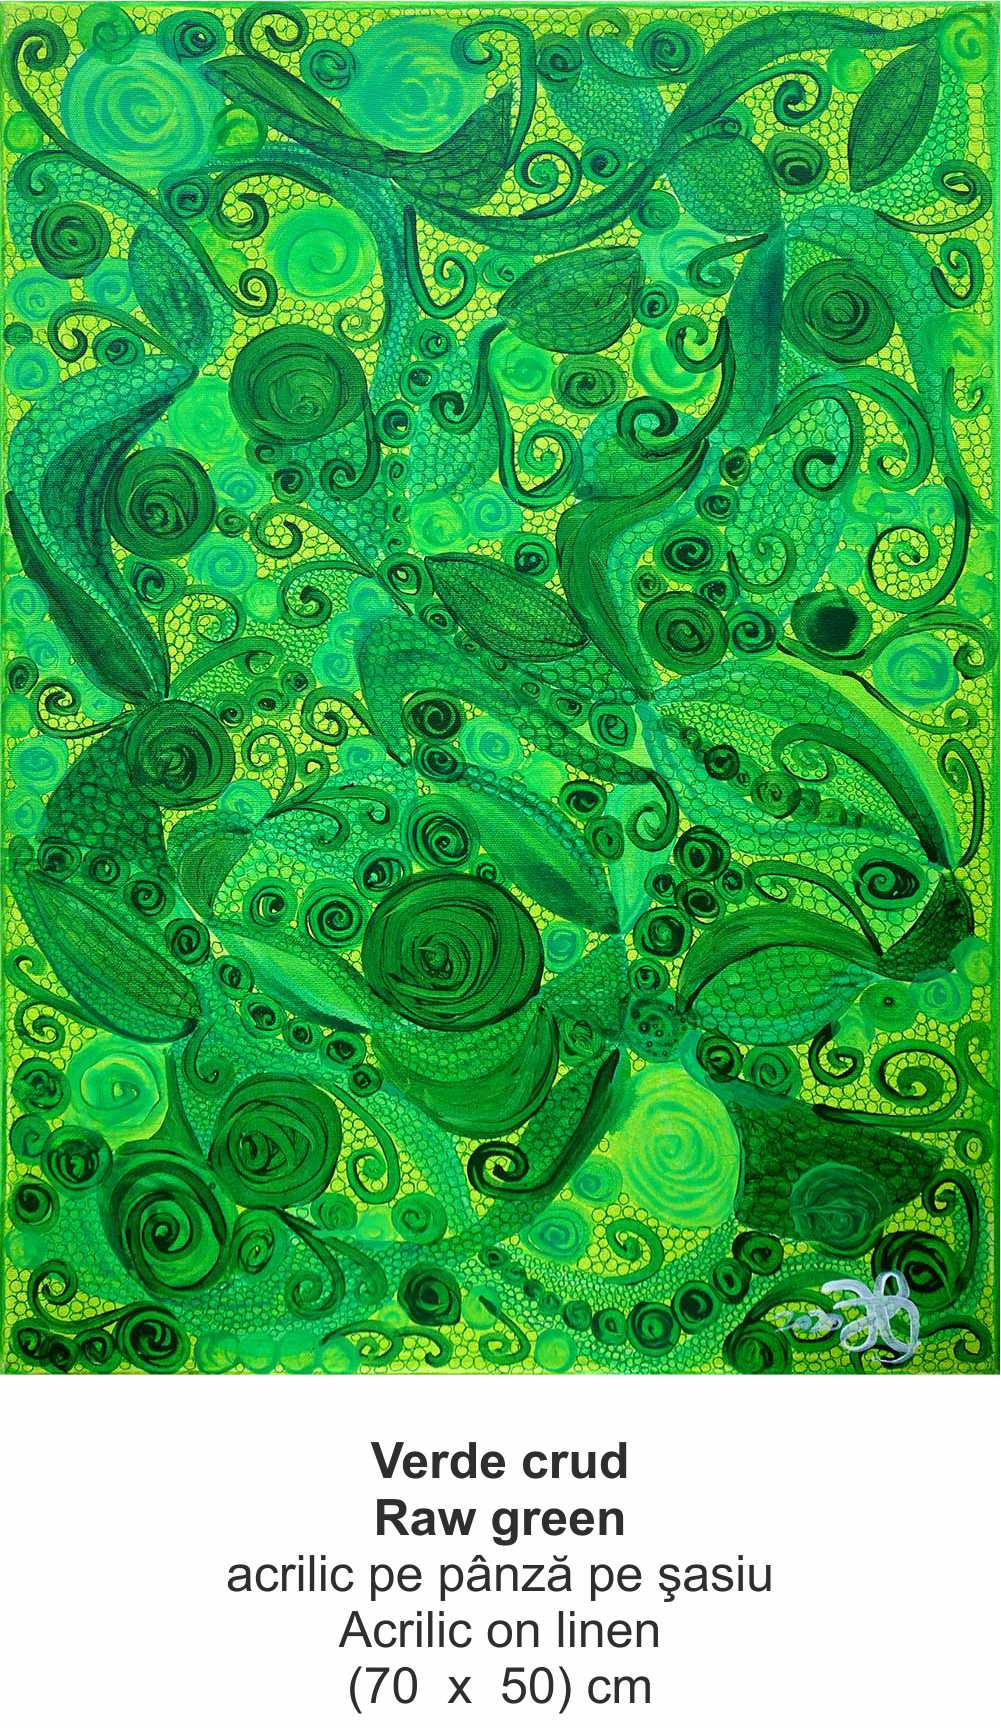 „Verde crud” („Raw green ”) - acrilic pe pânză pe şasiu (Acrilic on linen) - (70  x  50) cm - img 35